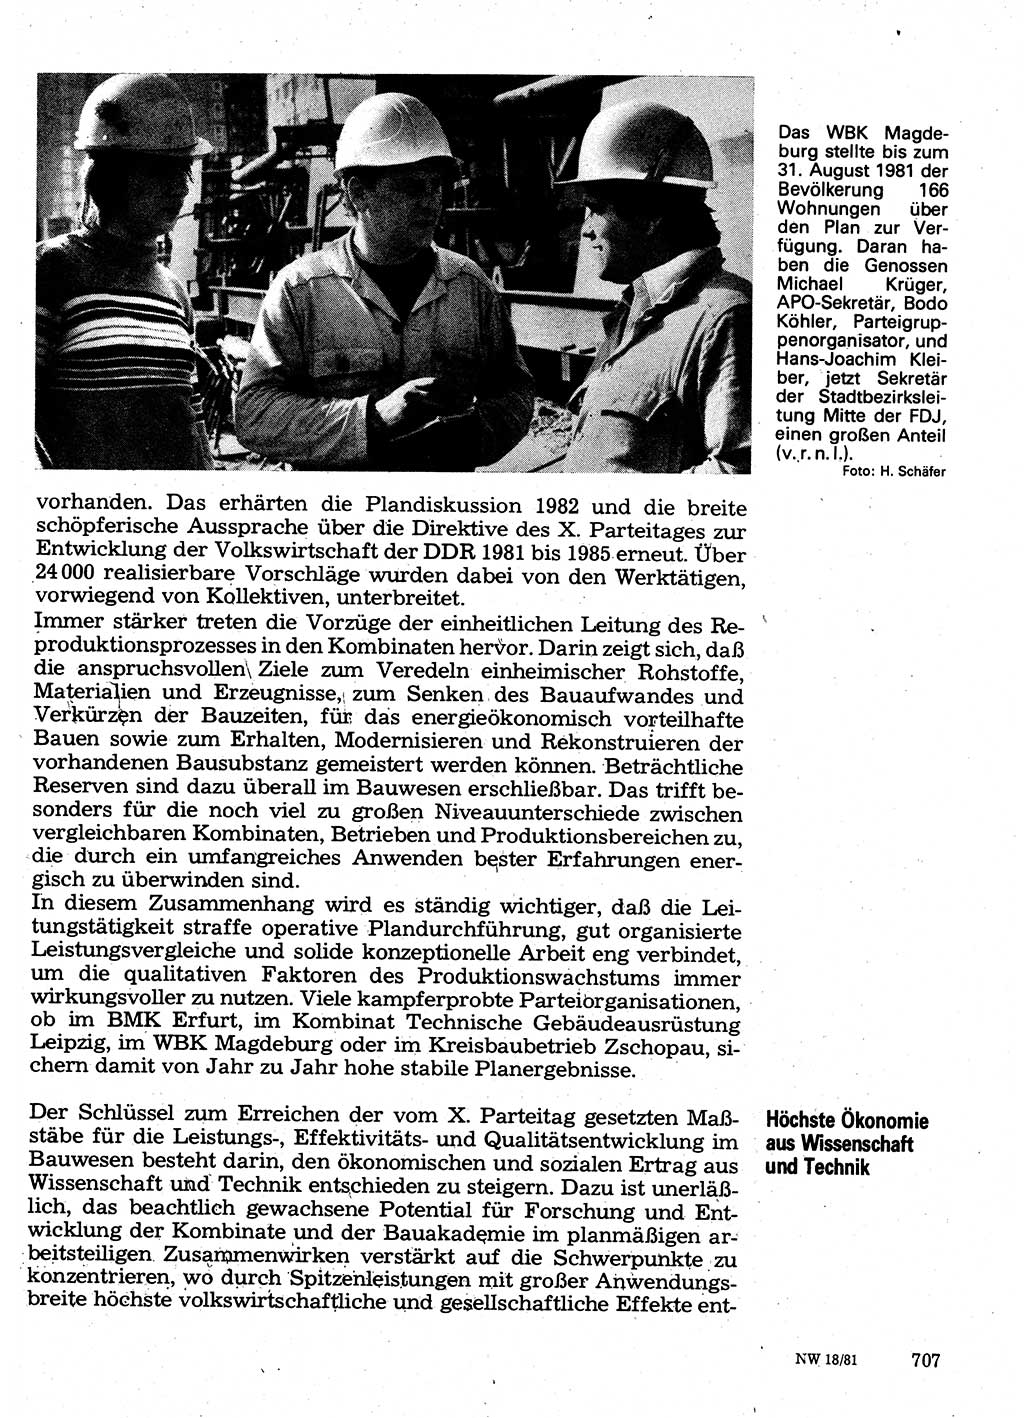 Neuer Weg (NW), Organ des Zentralkomitees (ZK) der SED (Sozialistische Einheitspartei Deutschlands) für Fragen des Parteilebens, 36. Jahrgang [Deutsche Demokratische Republik (DDR)] 1981, Seite 707 (NW ZK SED DDR 1981, S. 707)